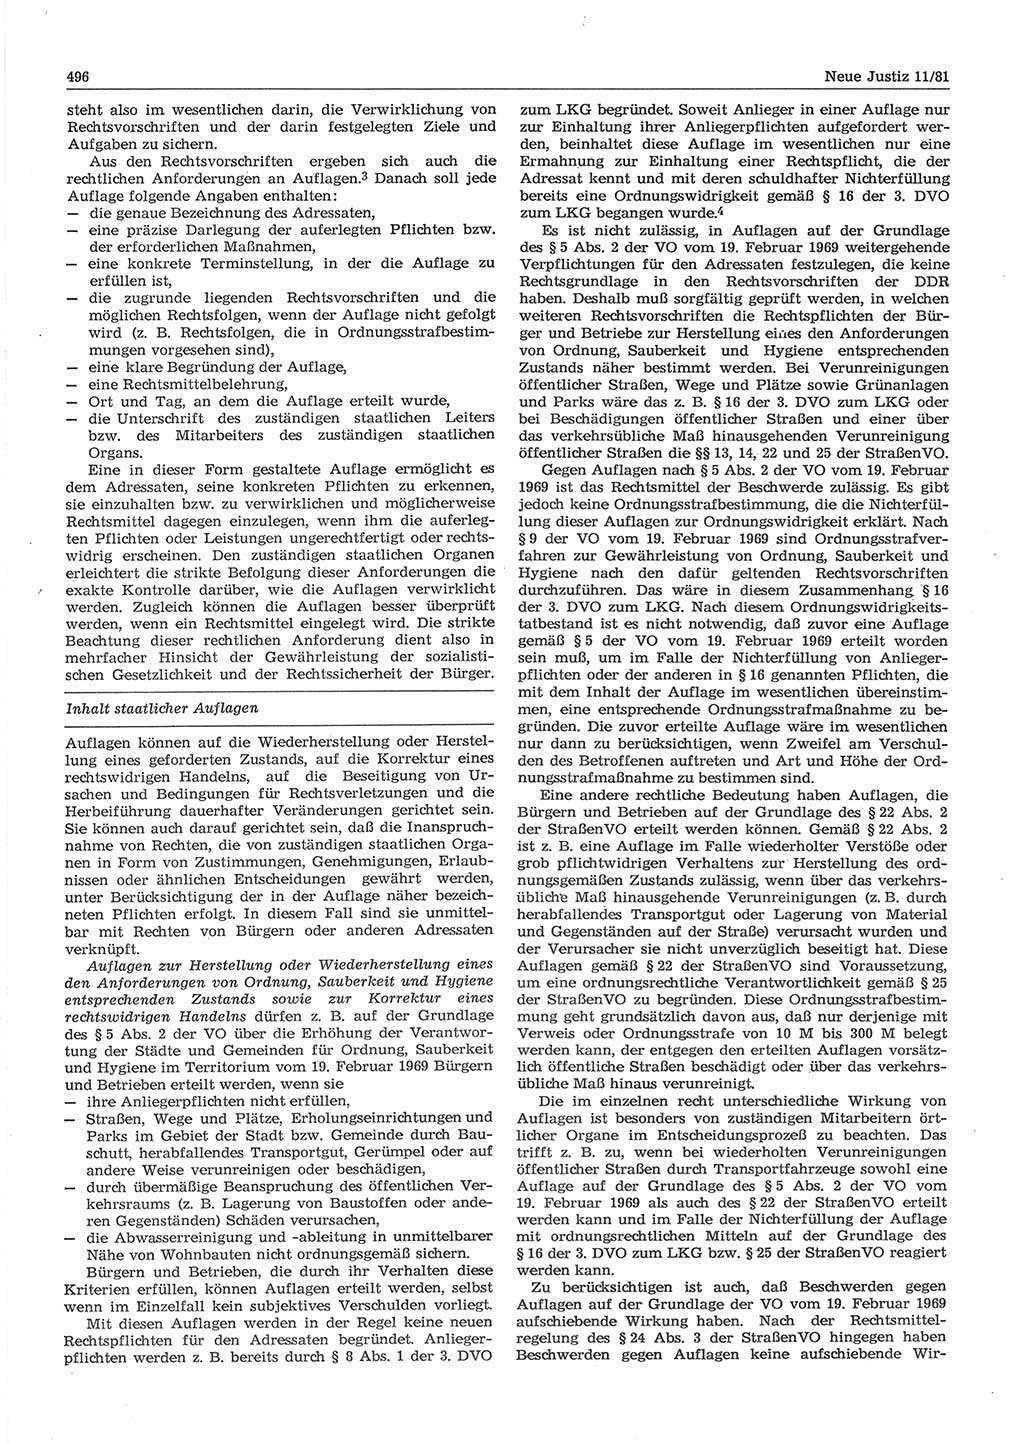 Neue Justiz (NJ), Zeitschrift für sozialistisches Recht und Gesetzlichkeit [Deutsche Demokratische Republik (DDR)], 35. Jahrgang 1981, Seite 496 (NJ DDR 1981, S. 496)